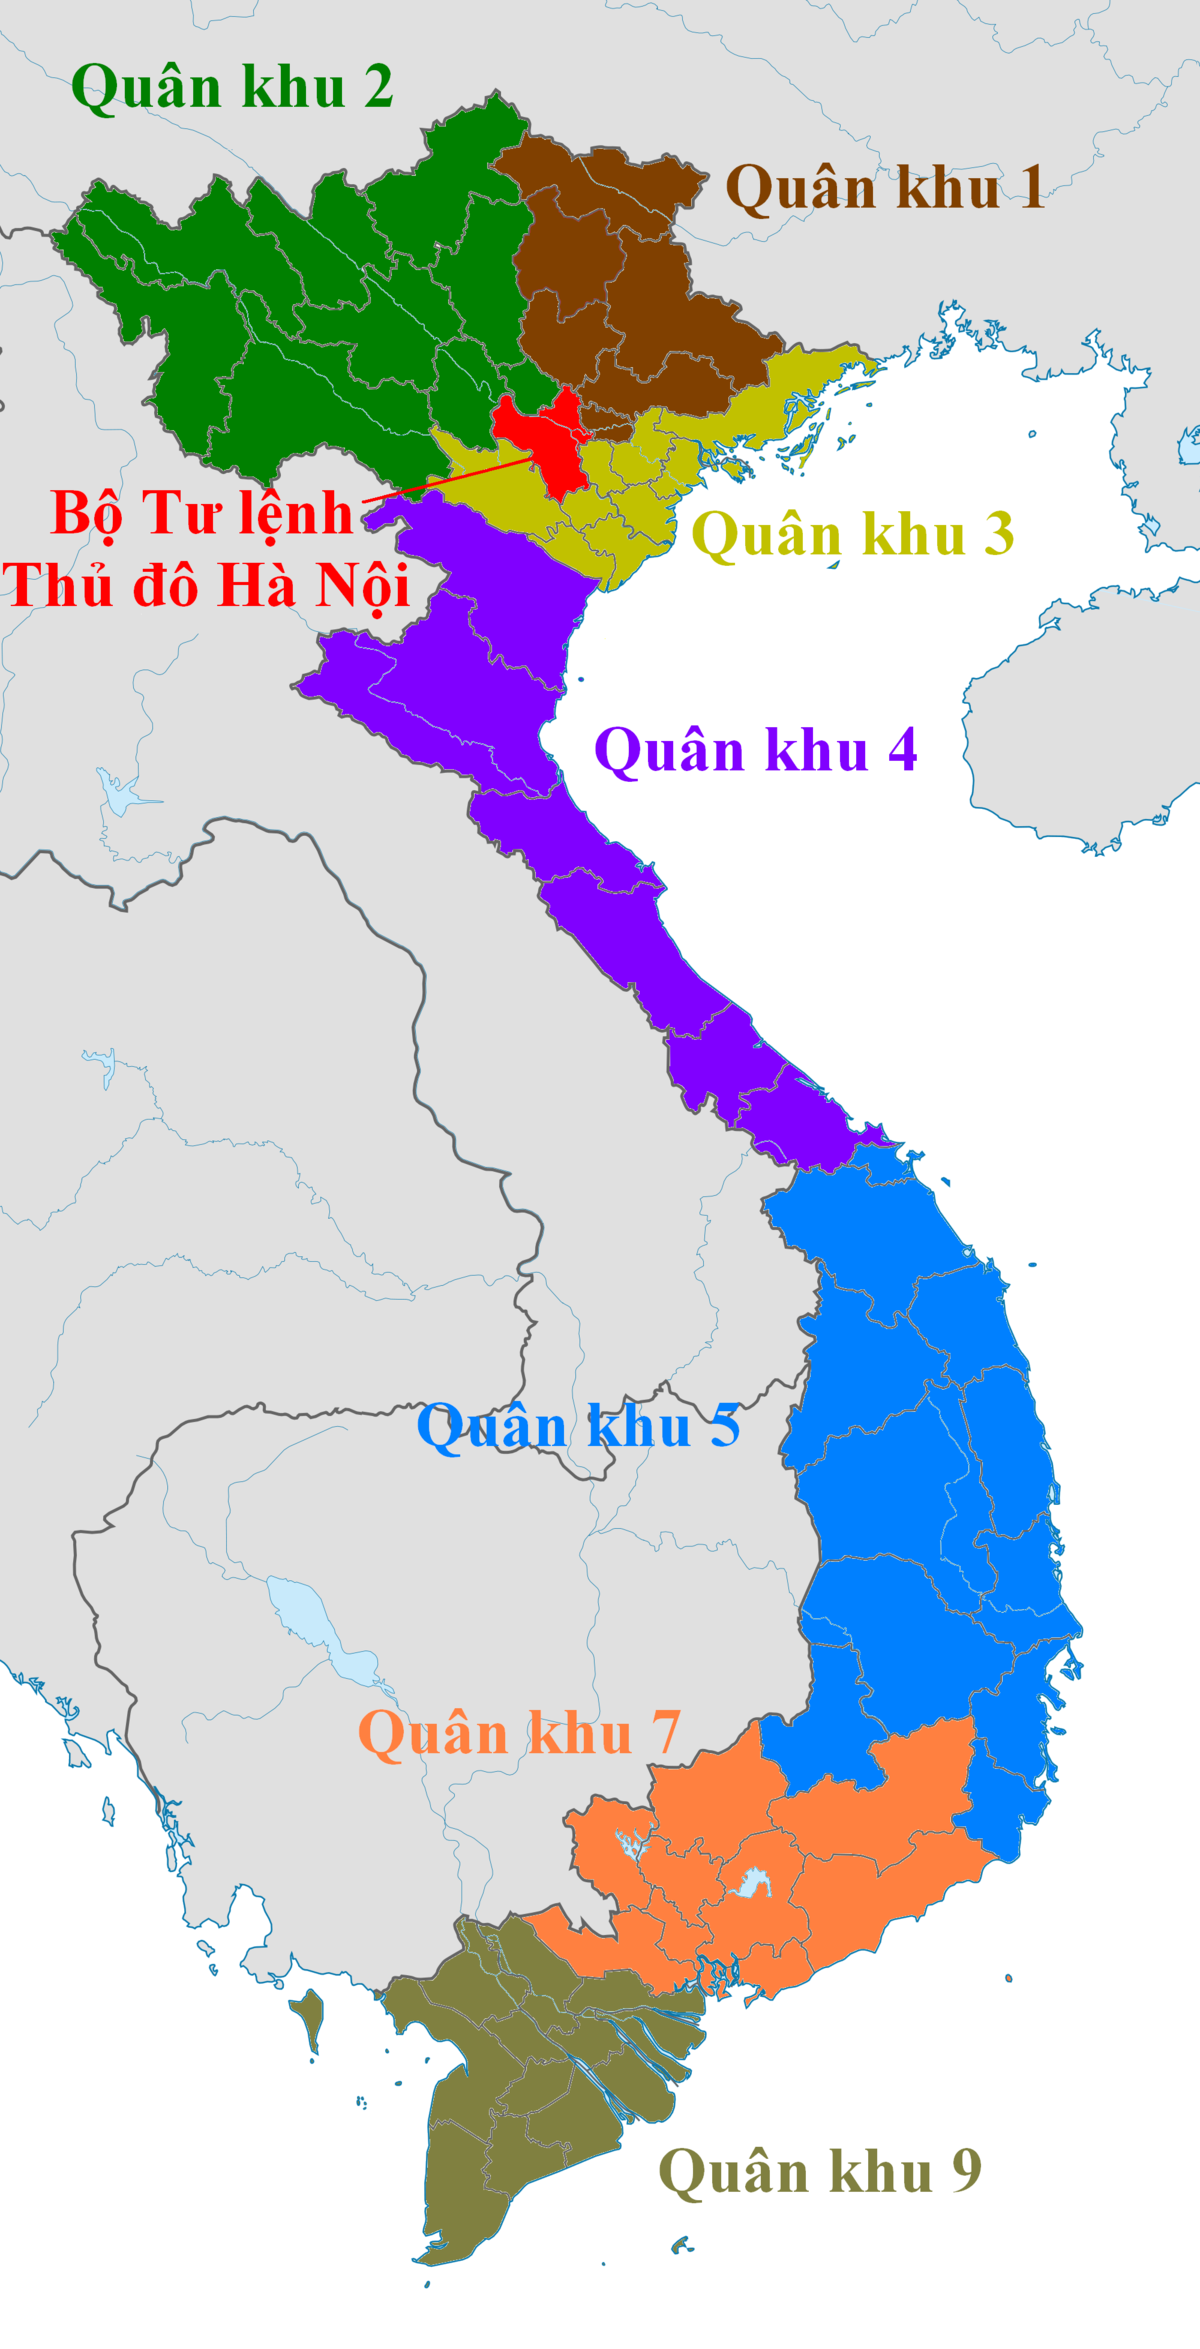 Hình ảnh liên quan đến Tư lệnh Thủ đô Hà Nội sẽ giúp bạn hiểu thêm về vị trí quan trọng của Hà Nội trong cấu trúc chính quyền của Việt Nam. Đừng bỏ lỡ cơ hội để tìm hiểu những thông tin quan trọng về Thủ đô Hà Nội!